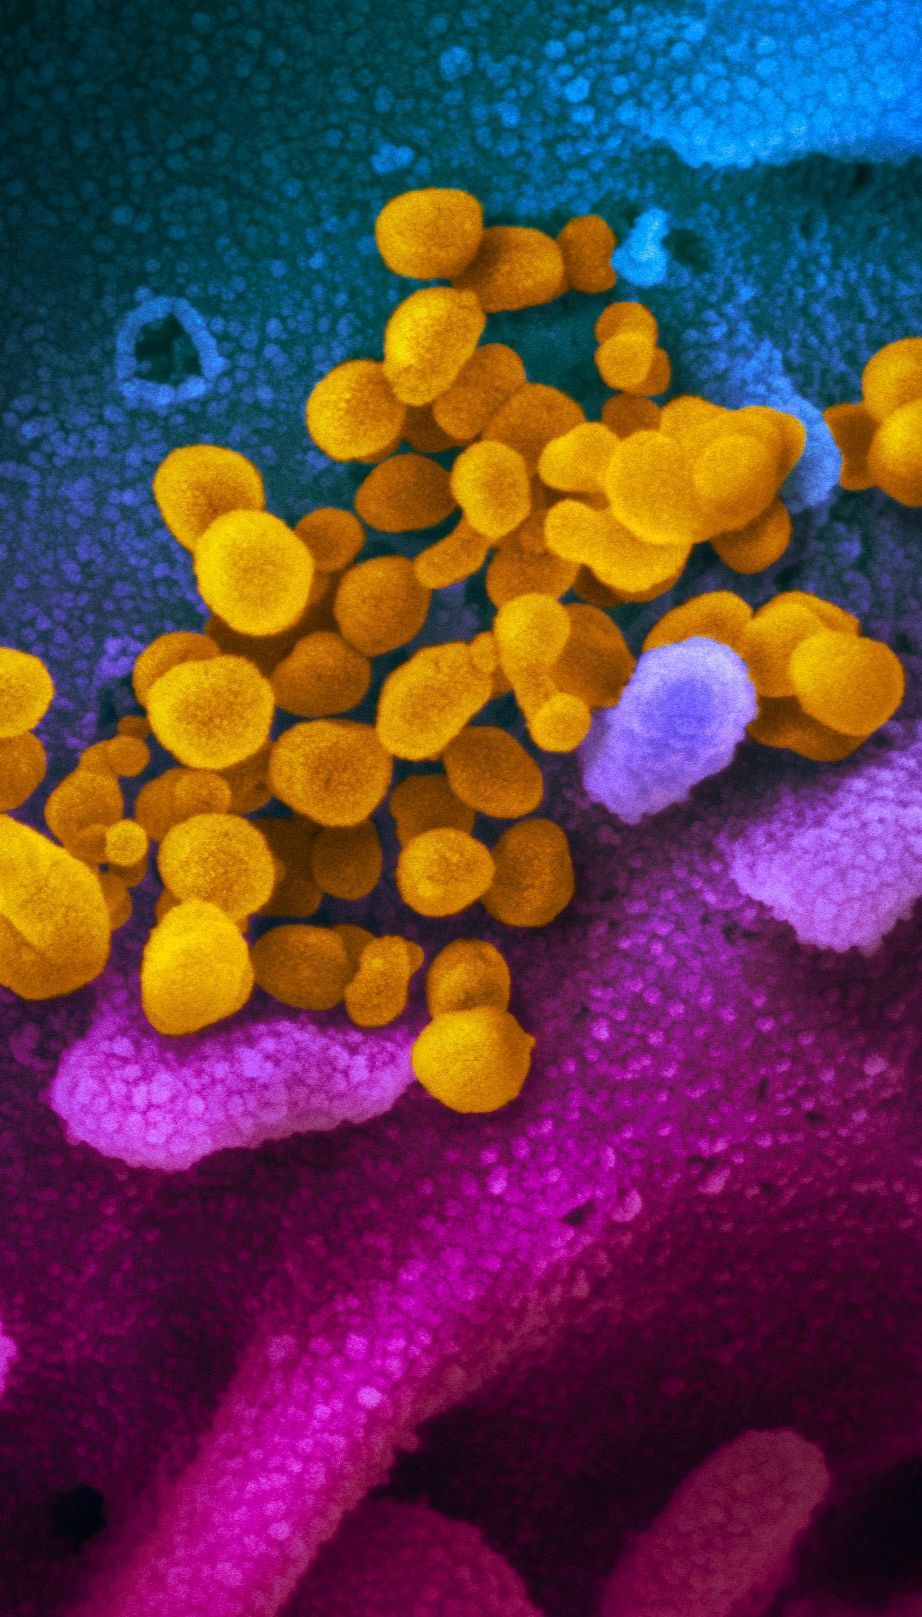 "Это спекуляция": ВОЗ отреагировала на заявления Трампа относительно лабораторного происхождения коронавируса